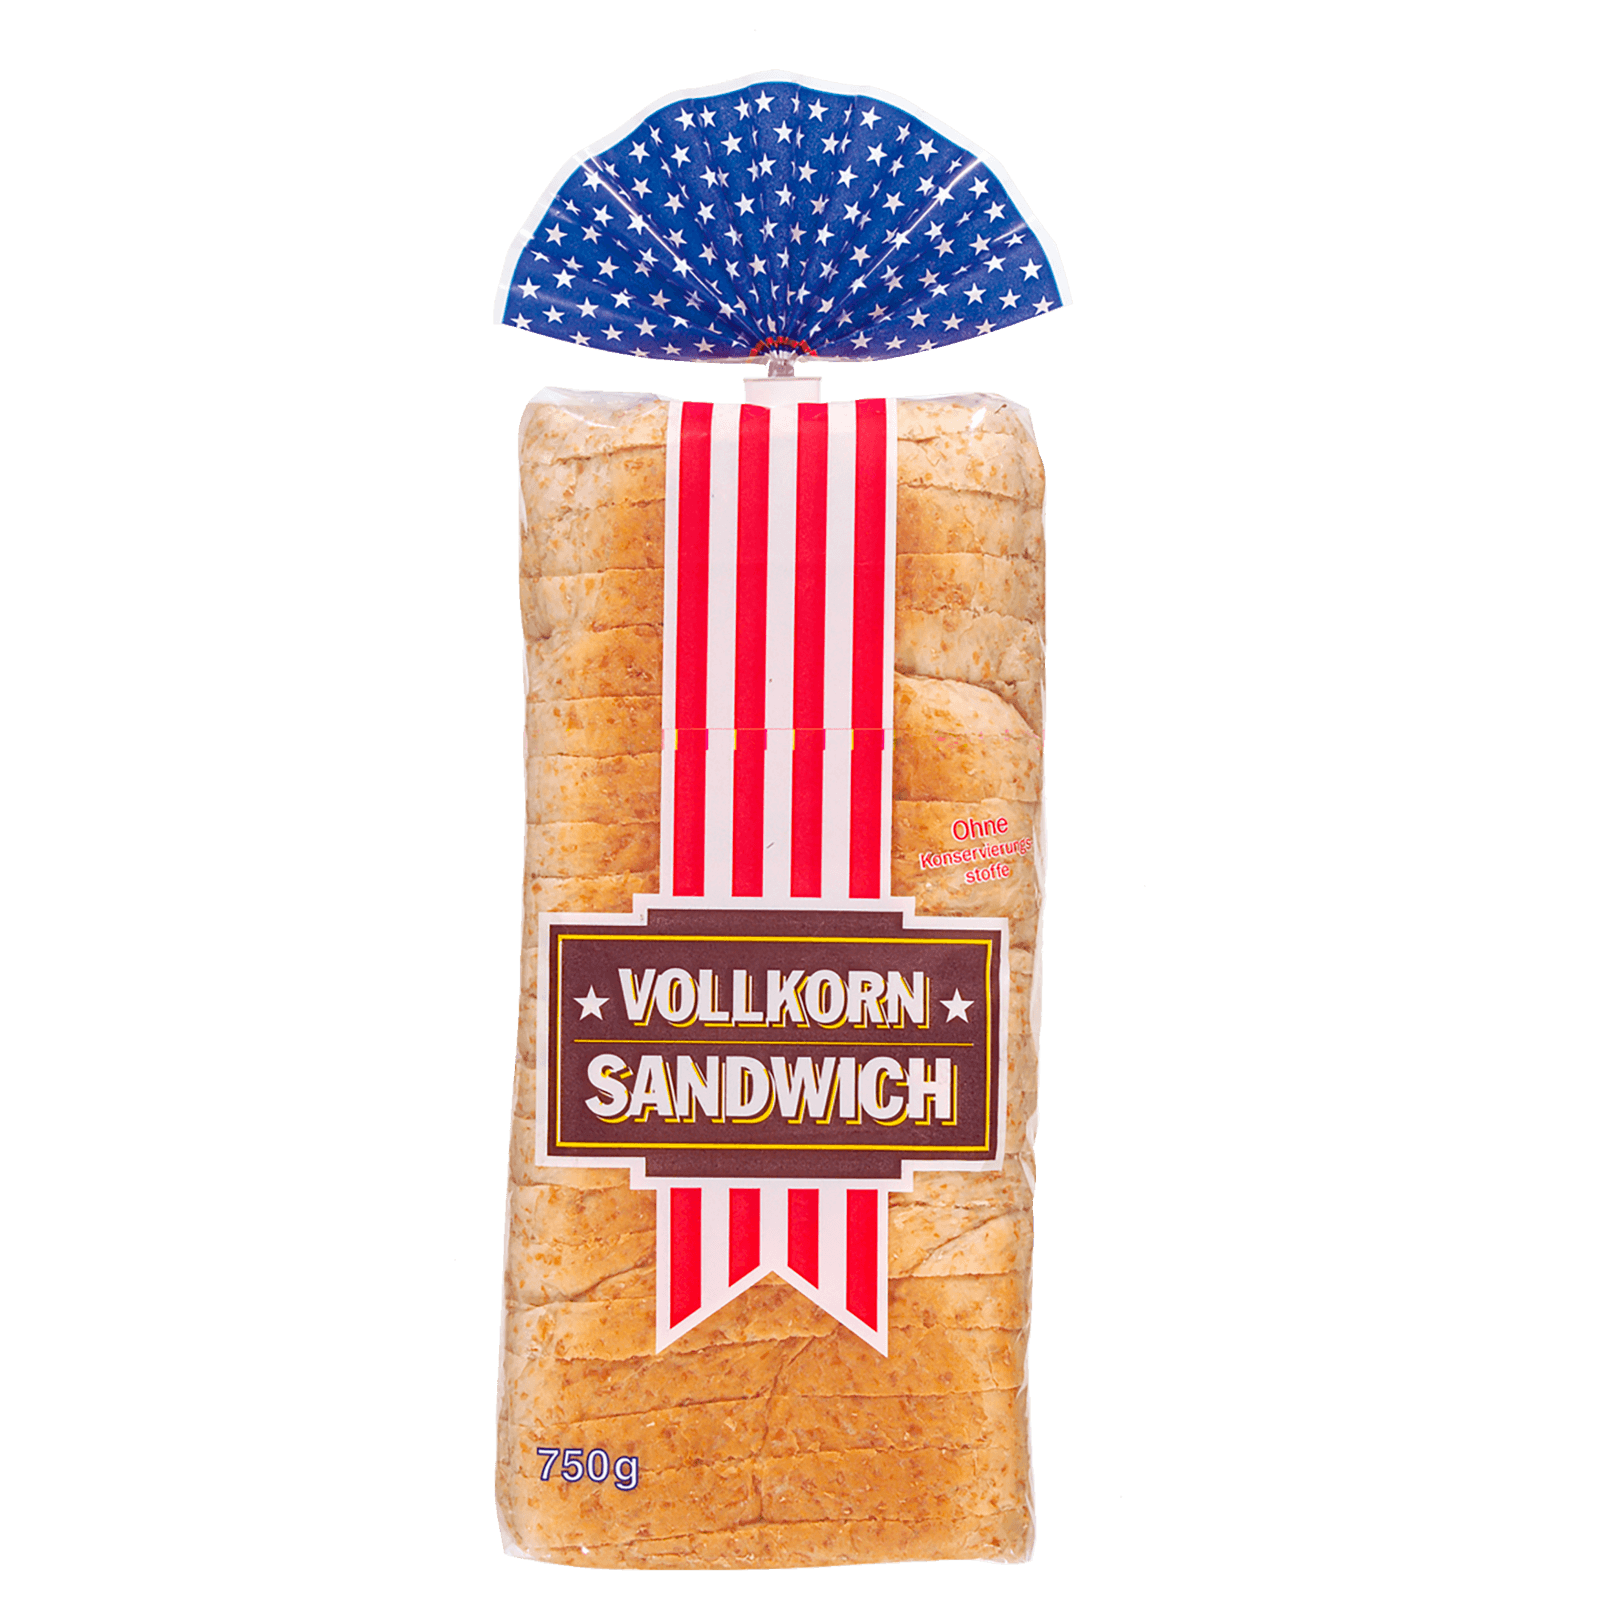 Gab Vollkorn-Sandwich 750g bei REWE online bestellen!